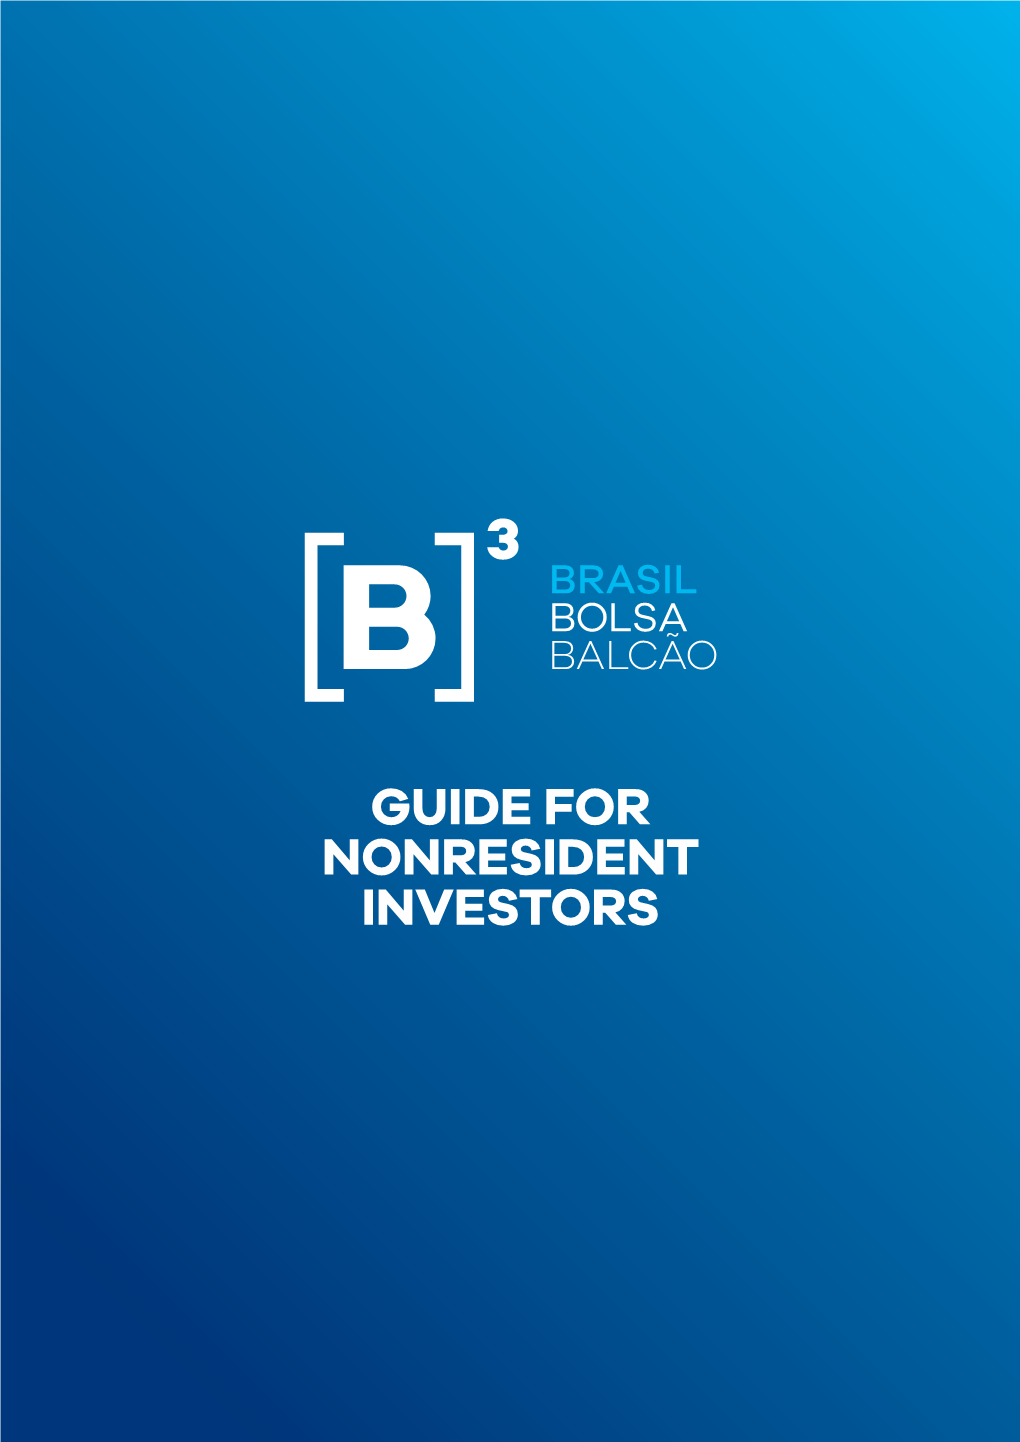 Guide for Nonresident Investors